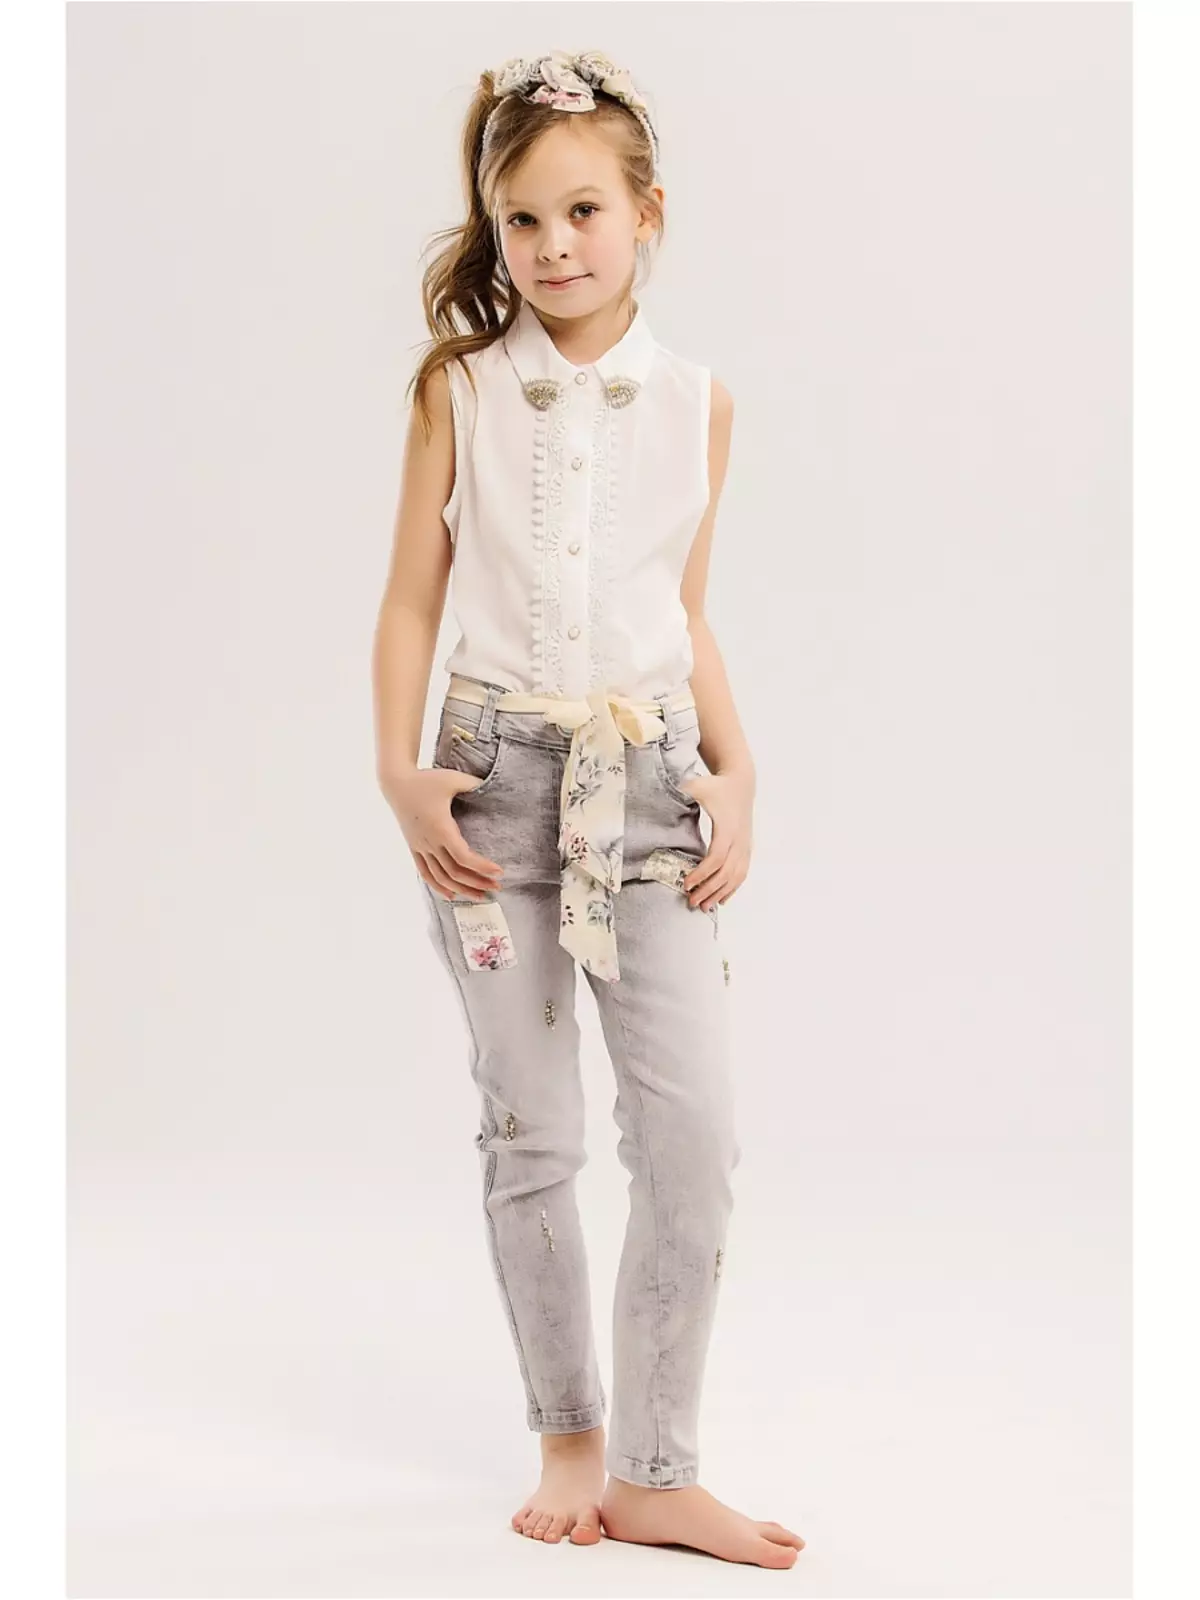 Dress for Girls Baby Steen (50 Fotók): Modellek Cape, Coat és más Gyermekruházat 3766_7